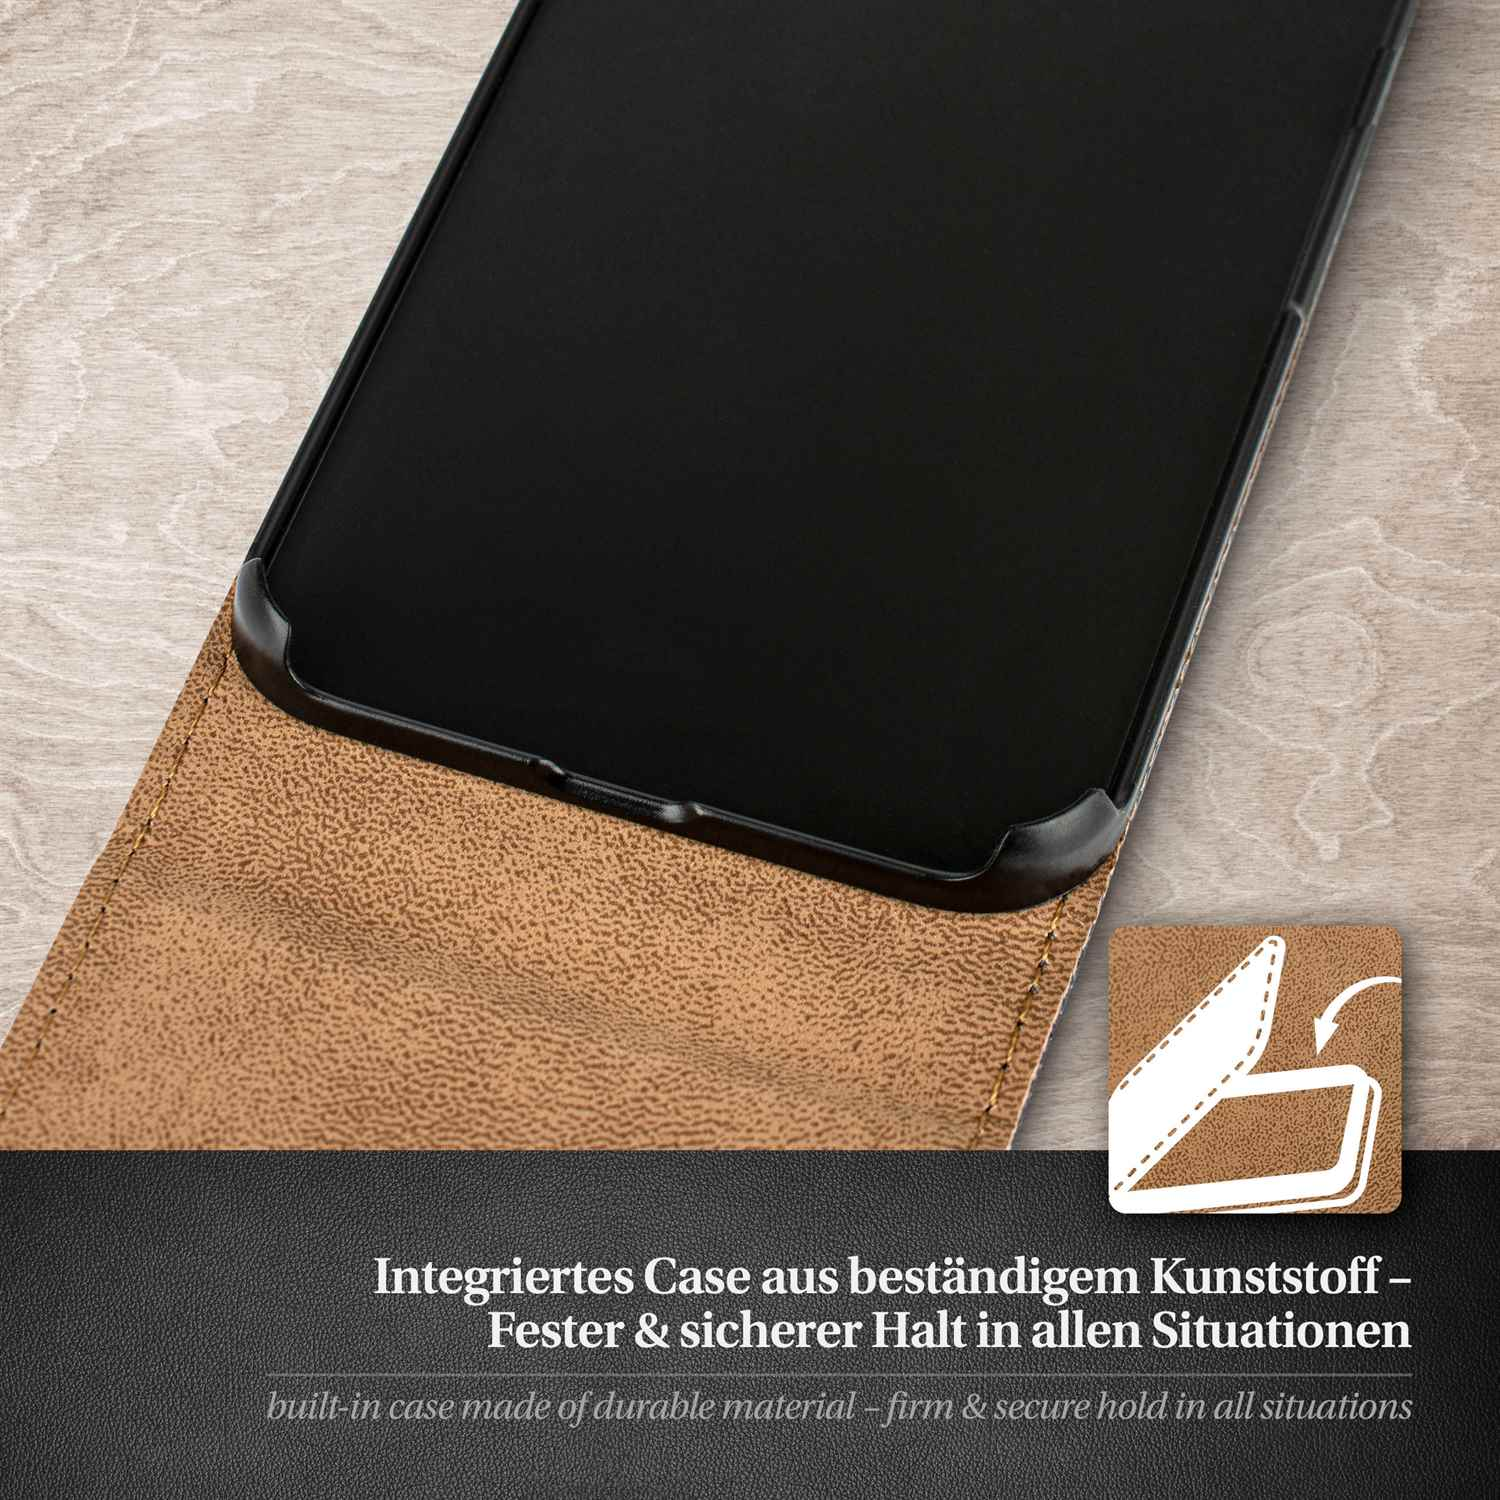 Cover, Flip Flip Case, Indigo-Violet G510, MOEX Ascend Huawei,